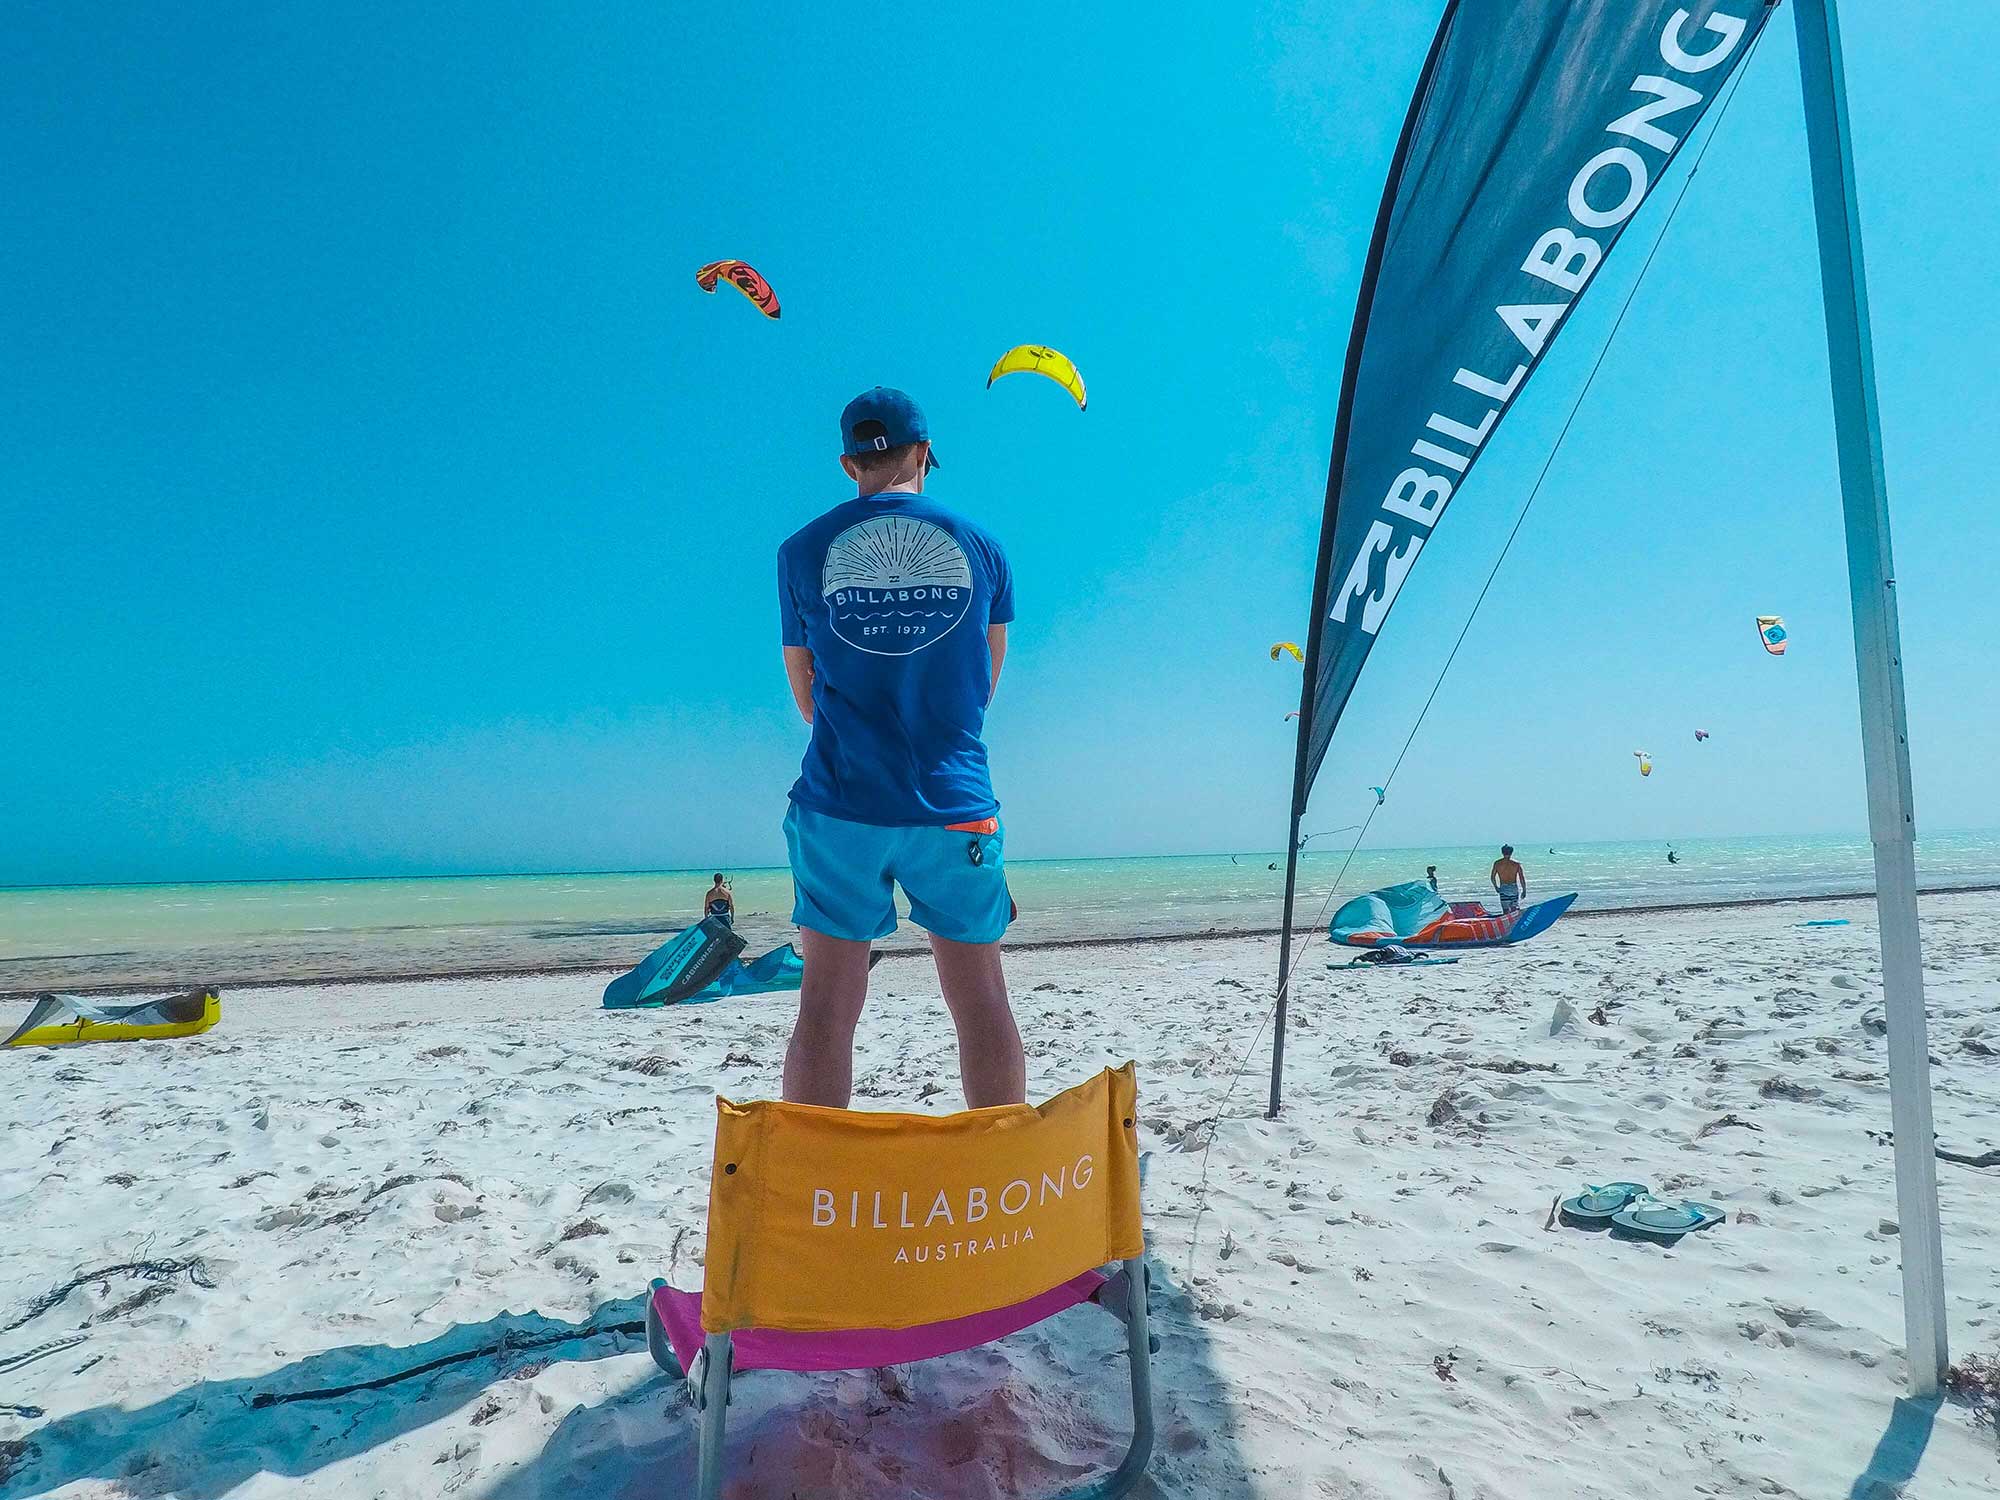 kite surfing rentals in 30a